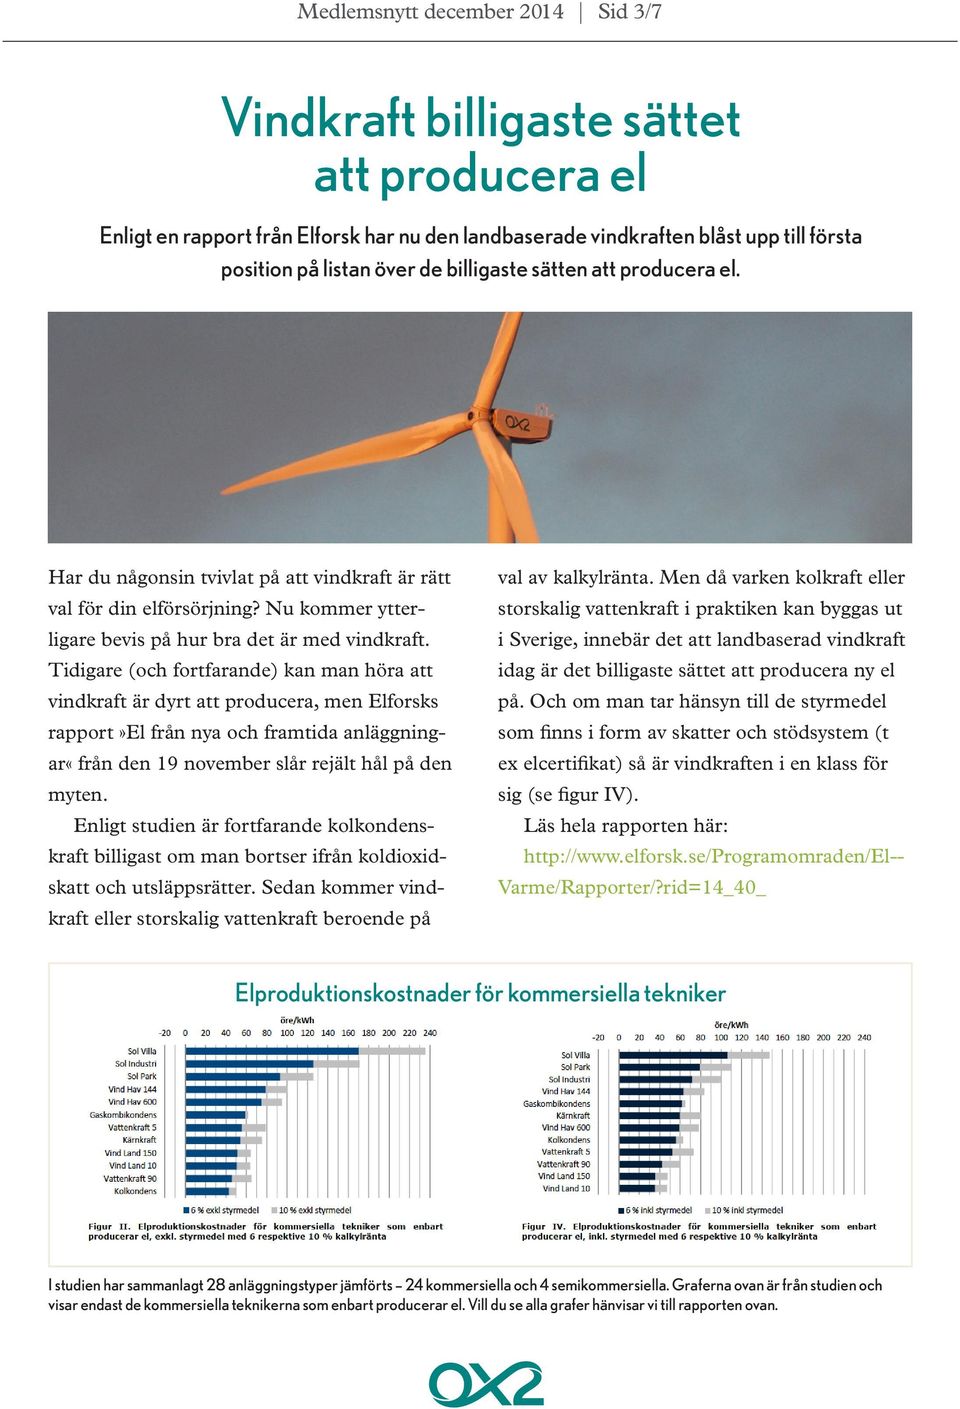 Tidigare (och fortfarande) kan man höra att vindkraft är dyrt att producera, men Elforsks rapport»el från nya och framtida anläggningar«från den 19 november slår rejält hål på den myten.